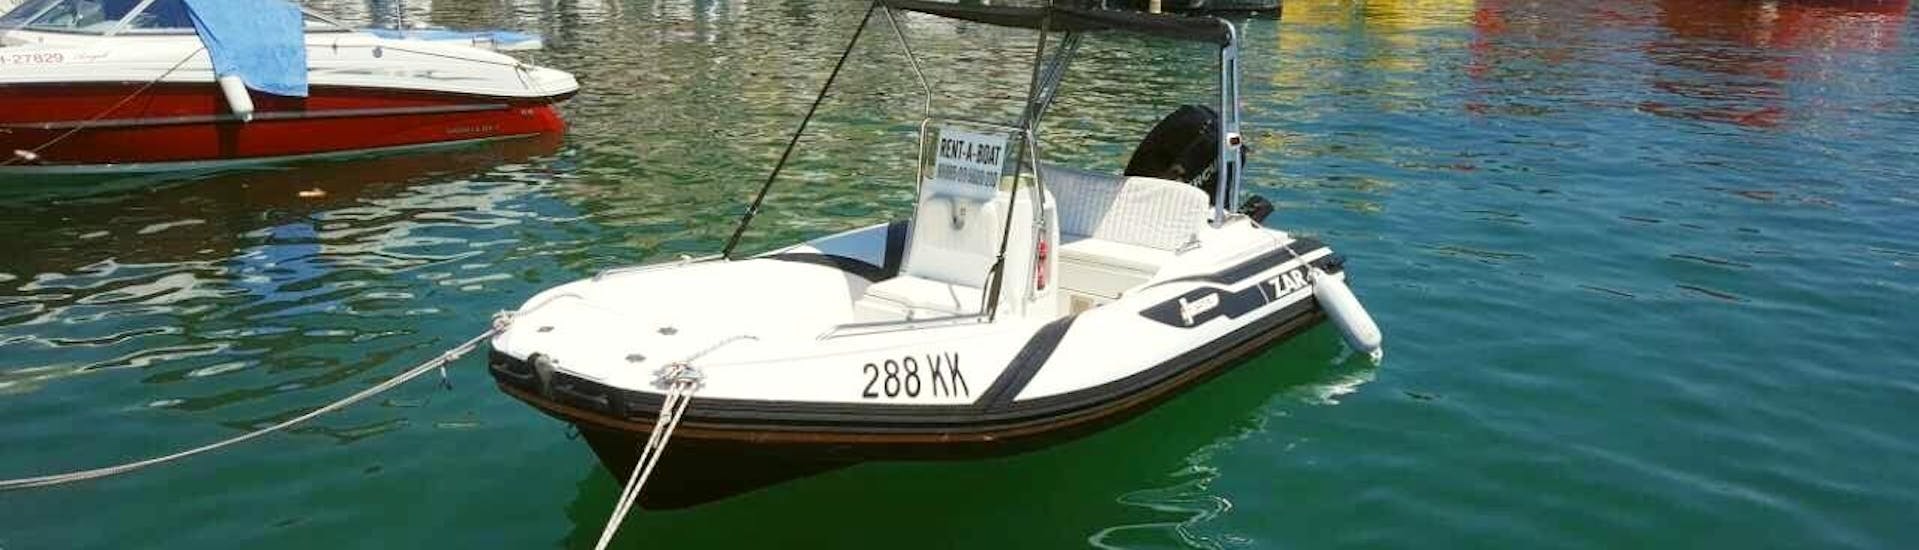 Boot beschikbaar voor een verhuur van een motorboot voor 5 personen in Krk met Rent a Boat Phoenix.